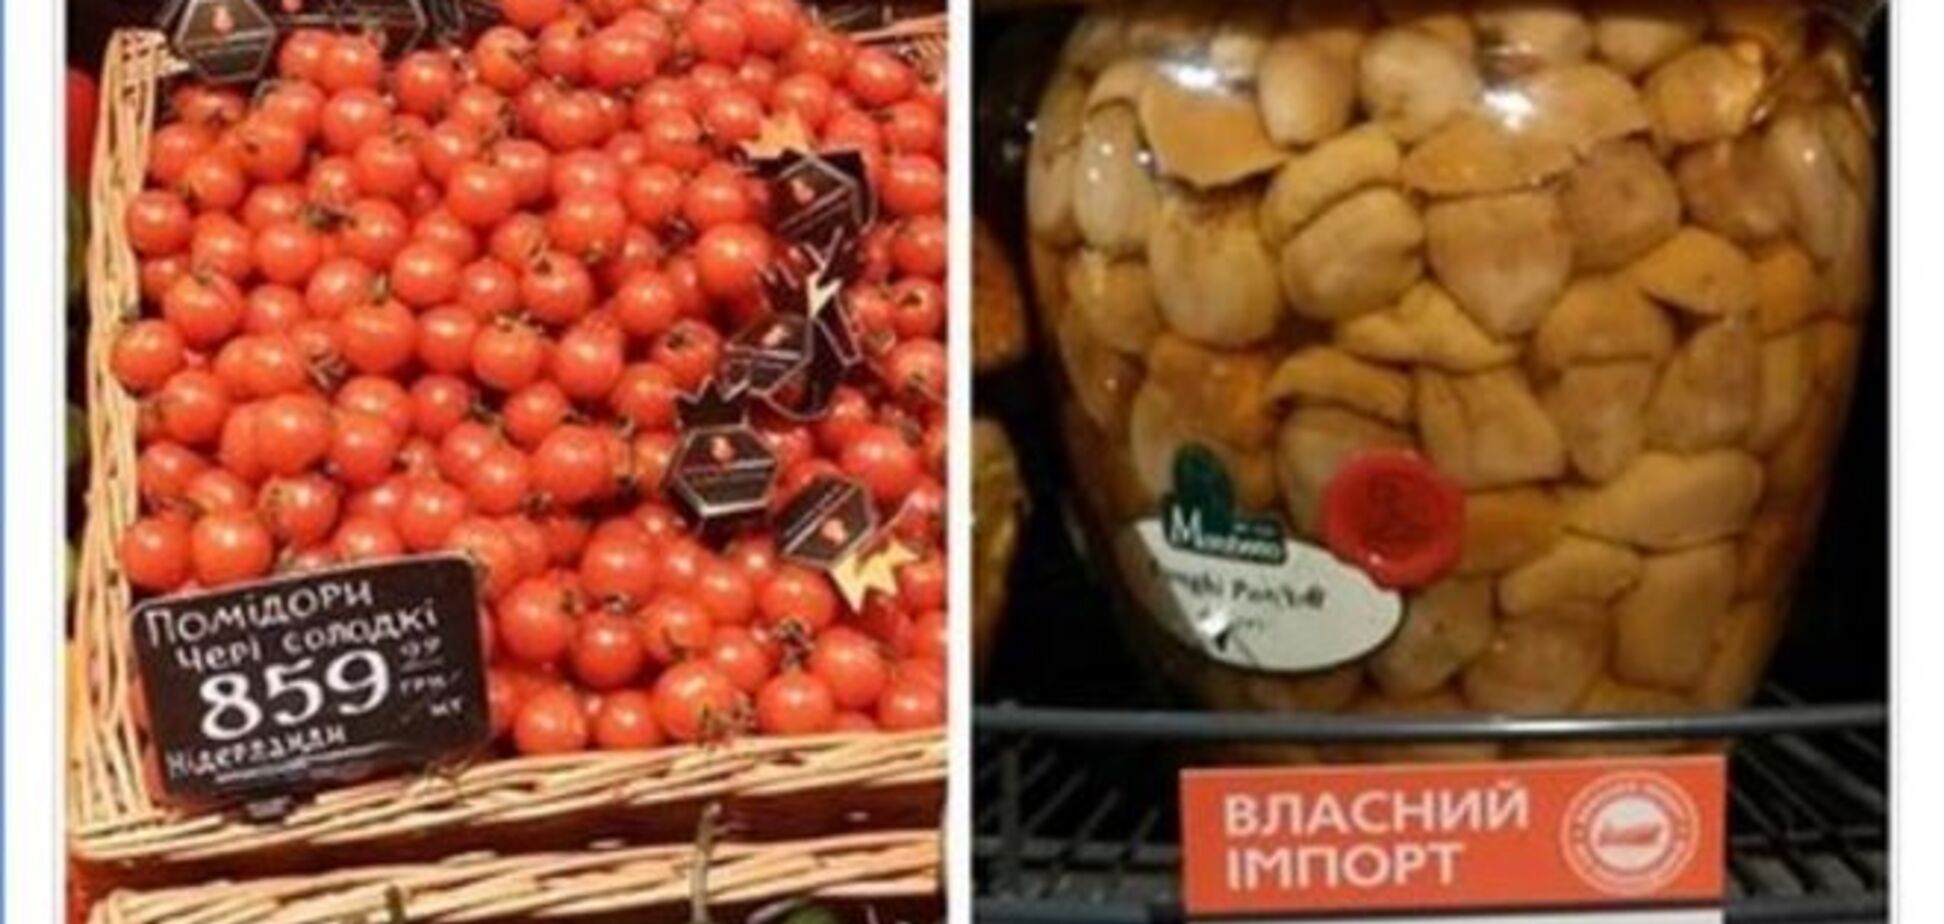 Цены в элитных супермаркетах Киева: банку грибов продают по 3,5 тыс. гривен